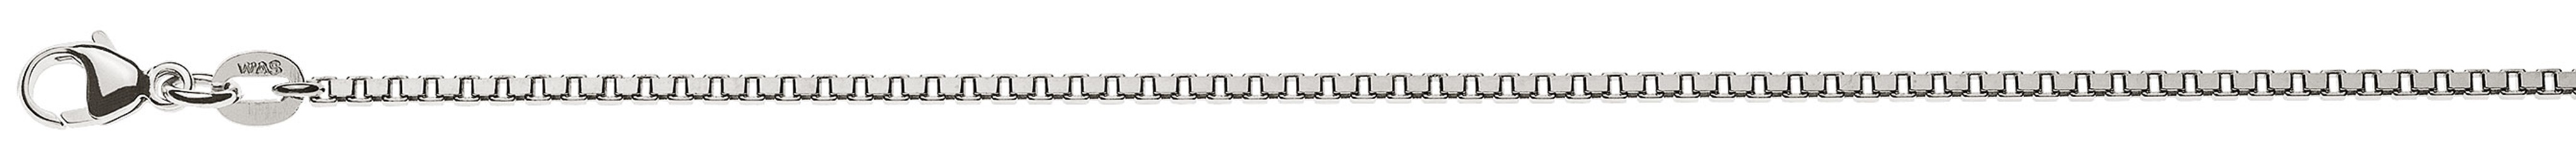 AURONOS Prestige Halskette Weissgold 18K Venezianerkette diamantiert 40cm 1.6mm